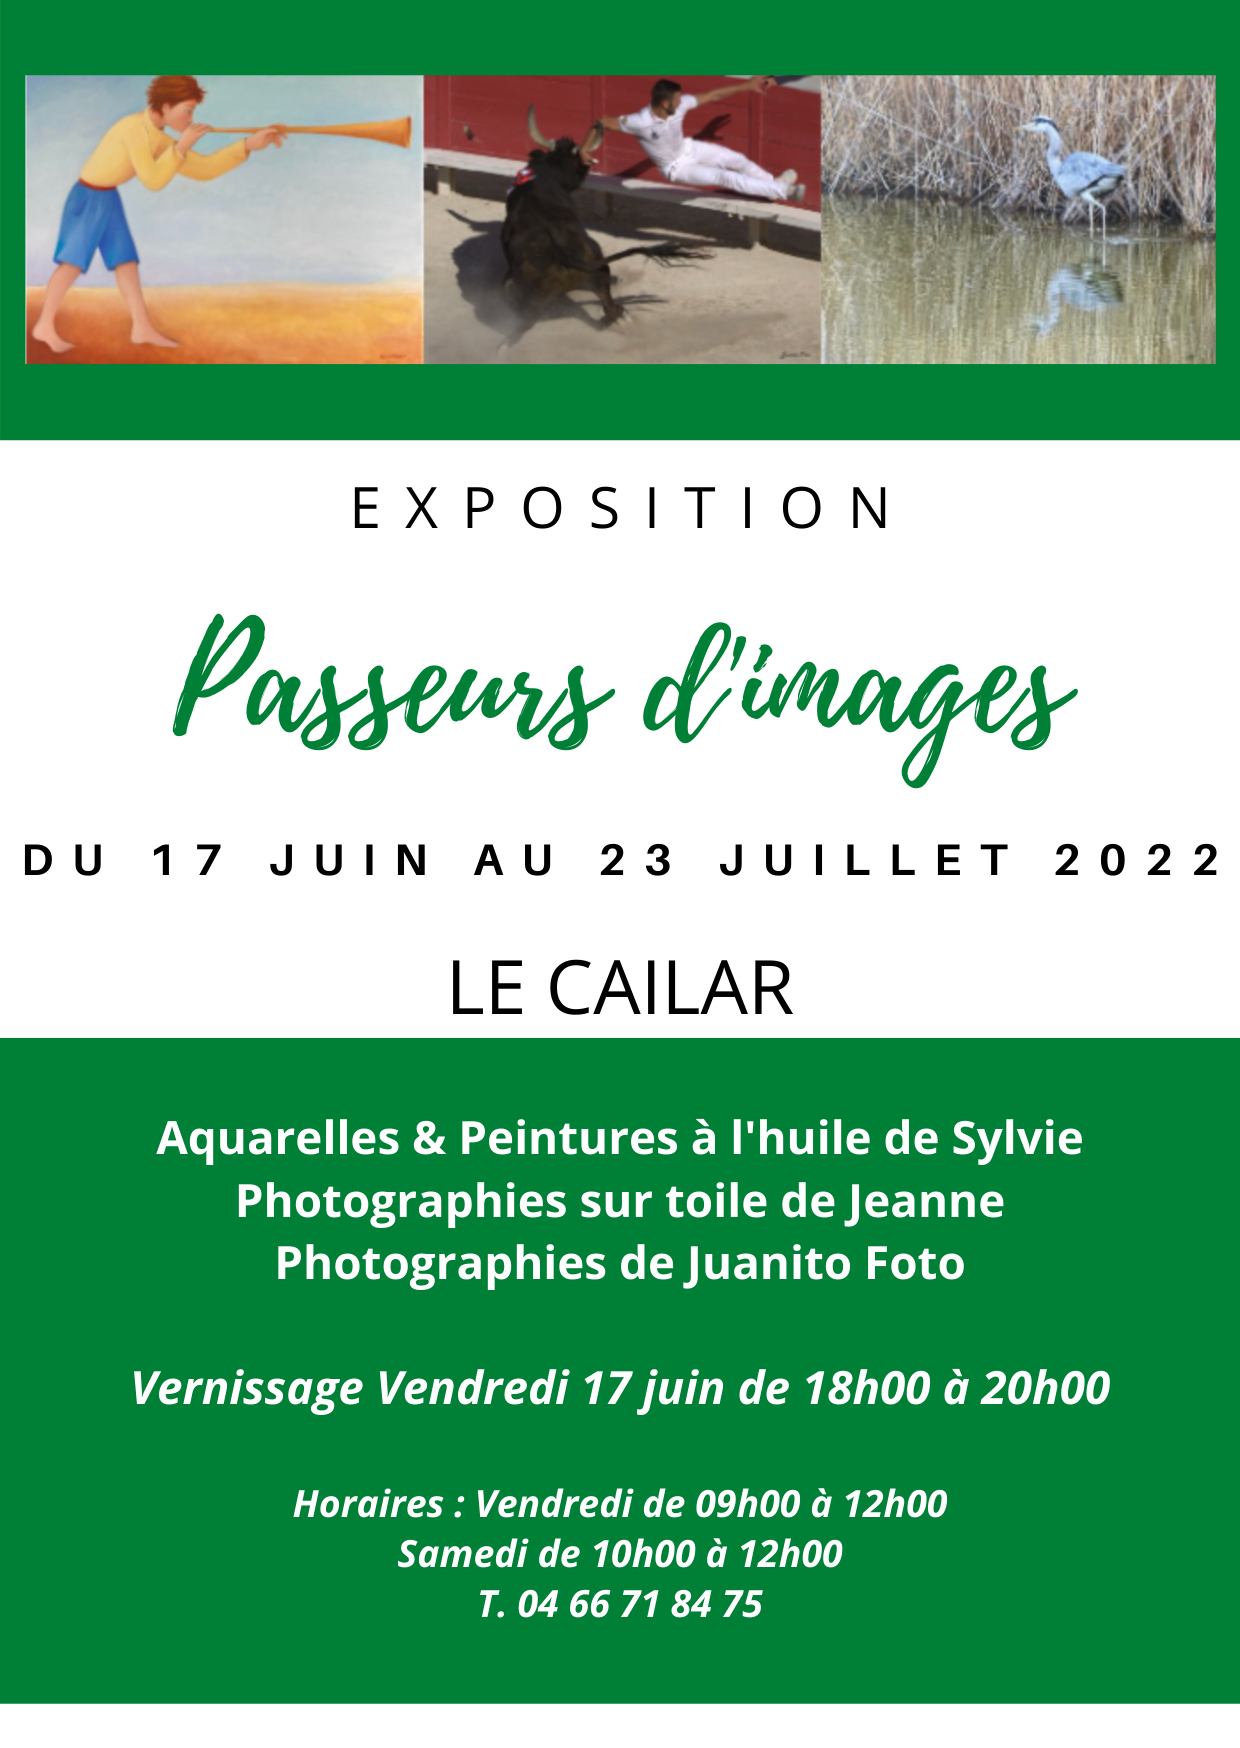 Exposition "Passeurs d'images" Le Cailar - Du 17 juin au 23 juillet